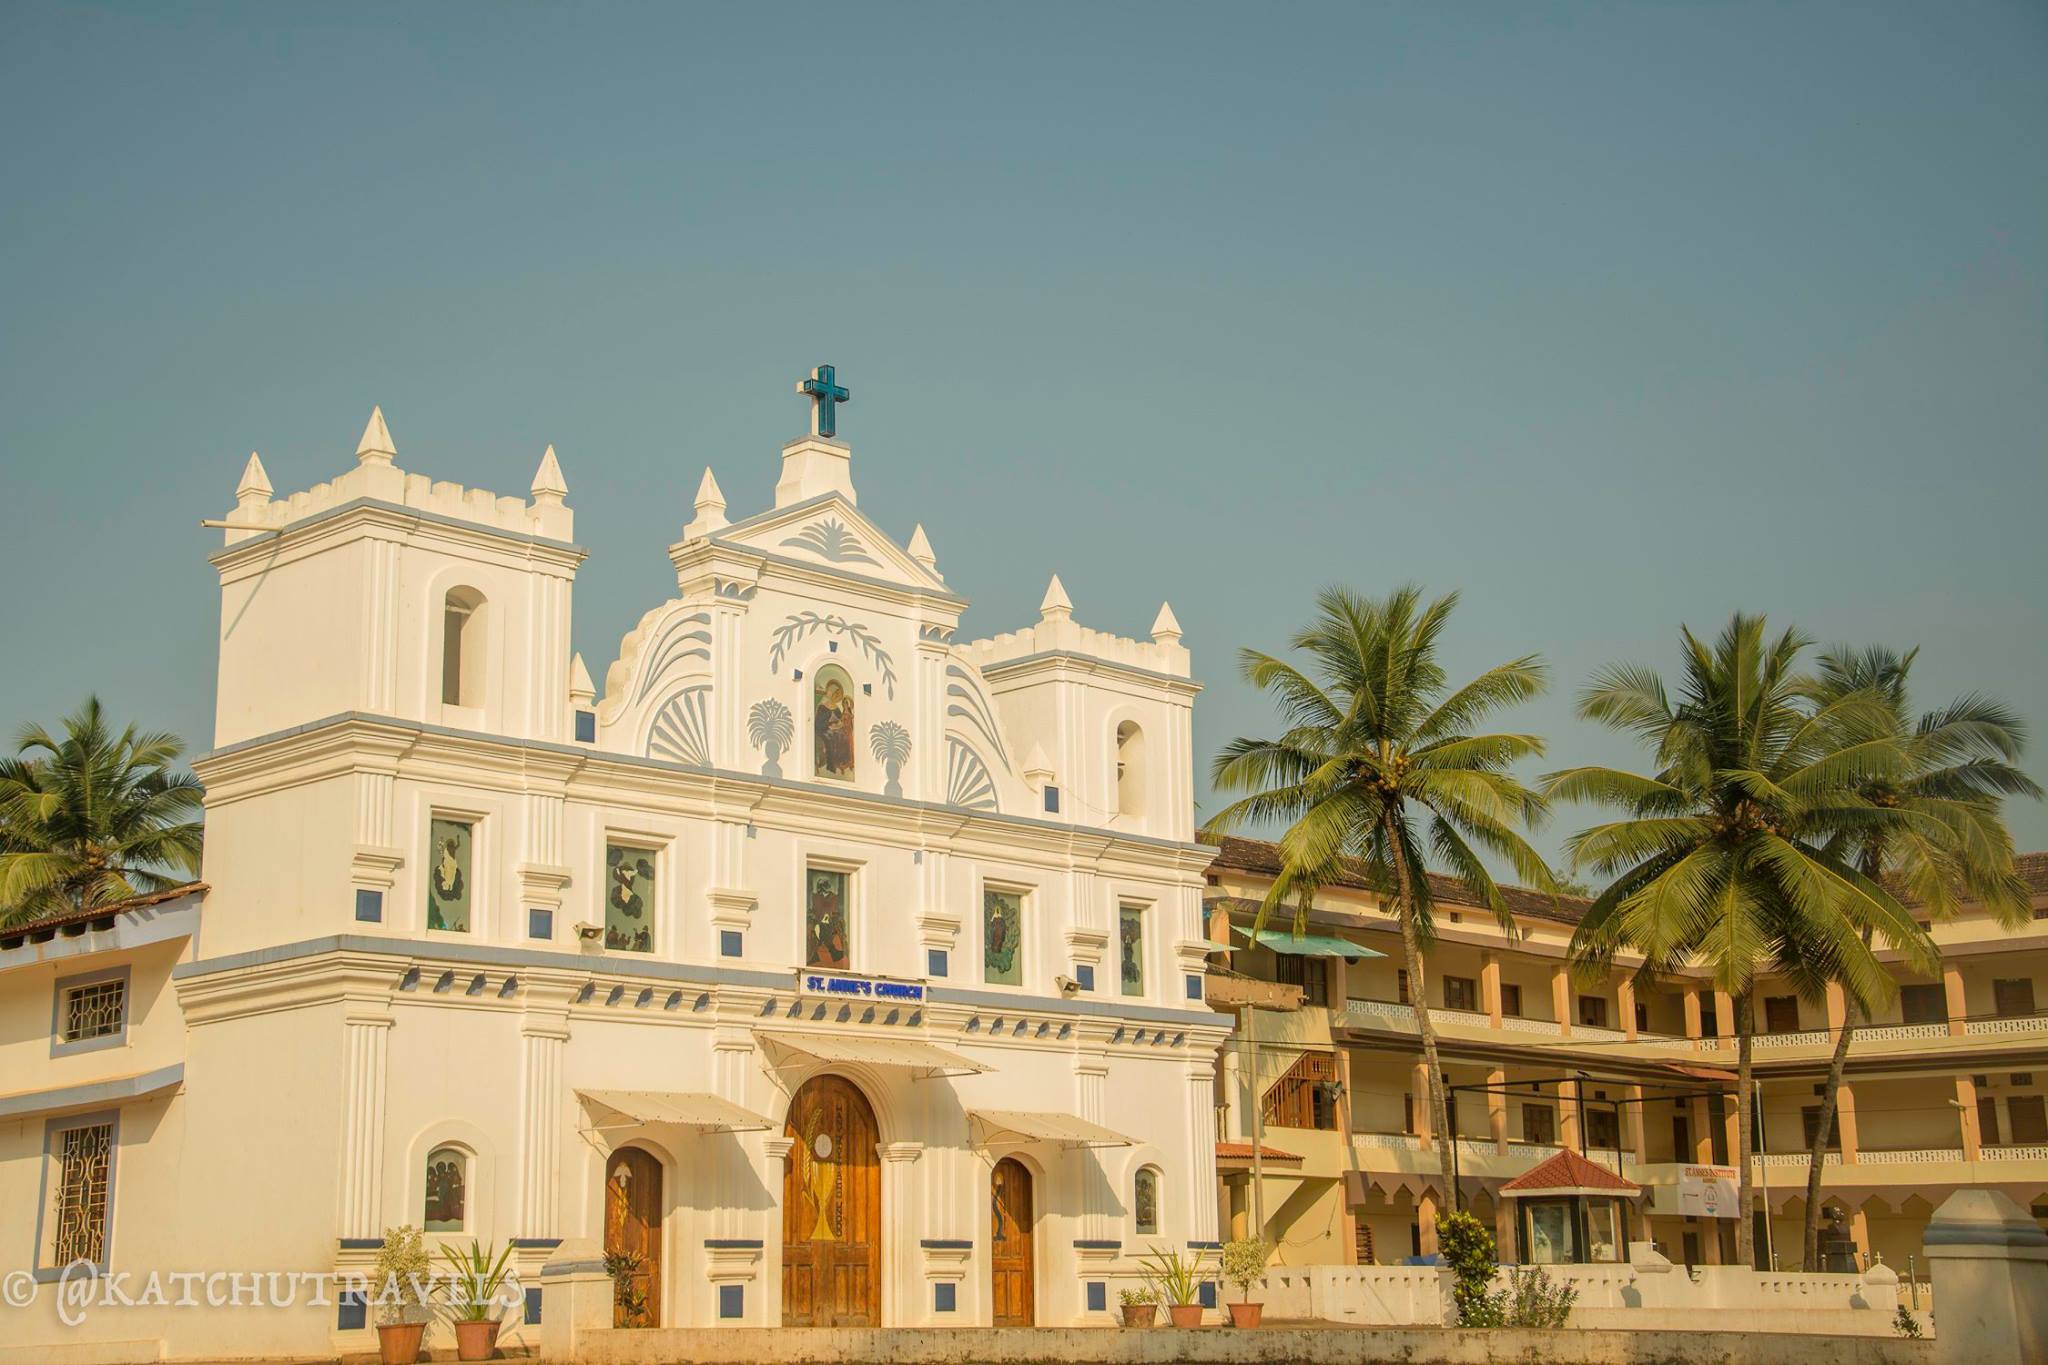 St Anne's Church in Agonda (Goa) 